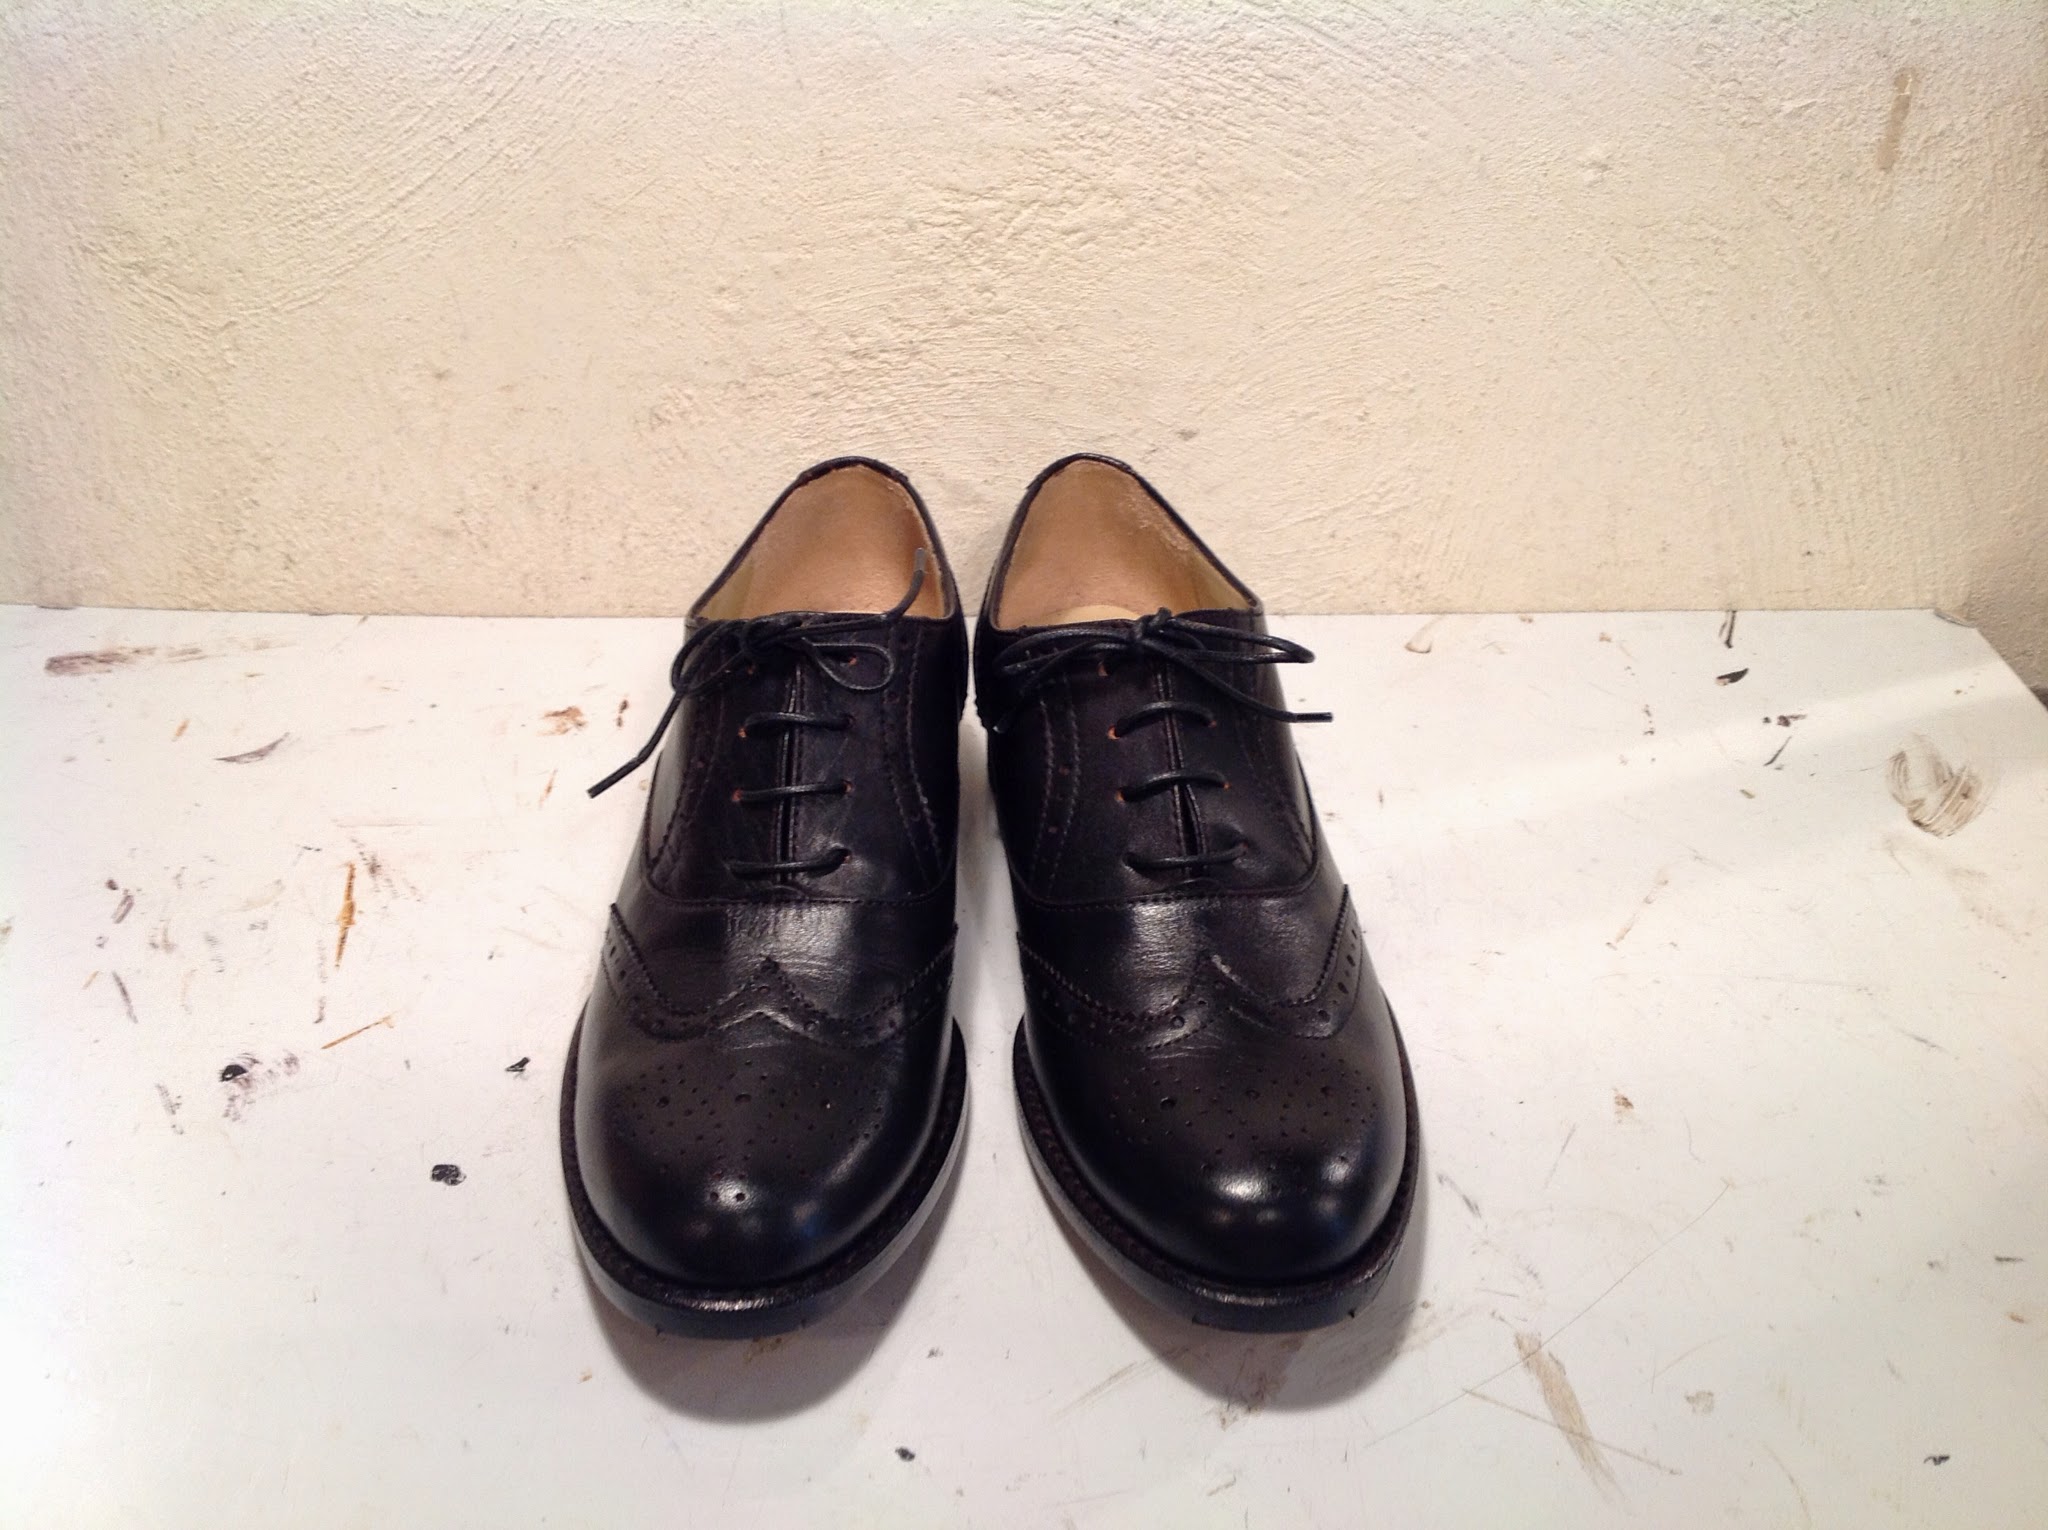 tonearmトーンアーム 吉祥寺のオーダー靴と靴修理のお店: 5月 2014